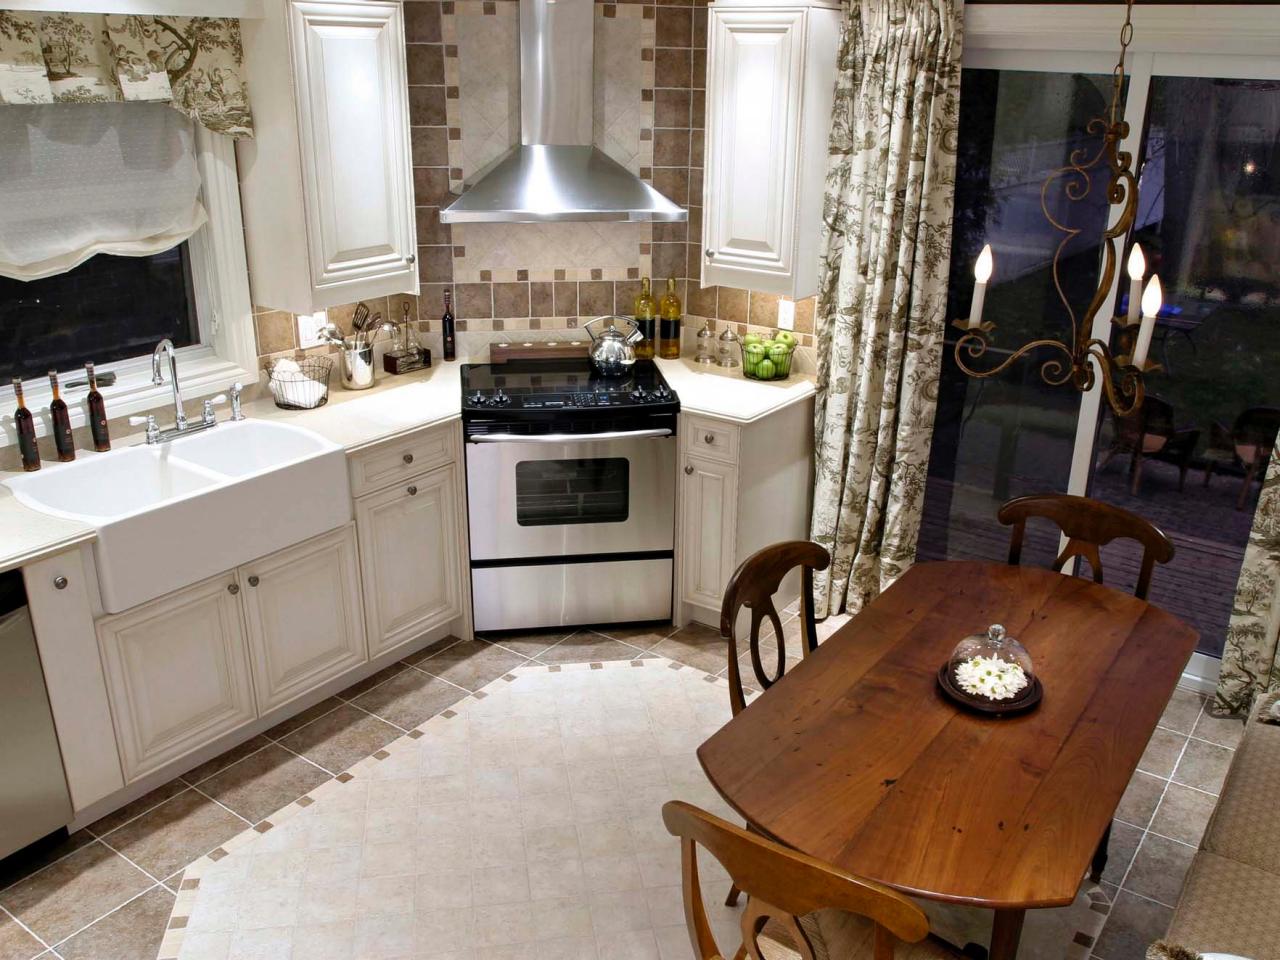 Kitchen Layout Templates 6 Different Designs HGTV